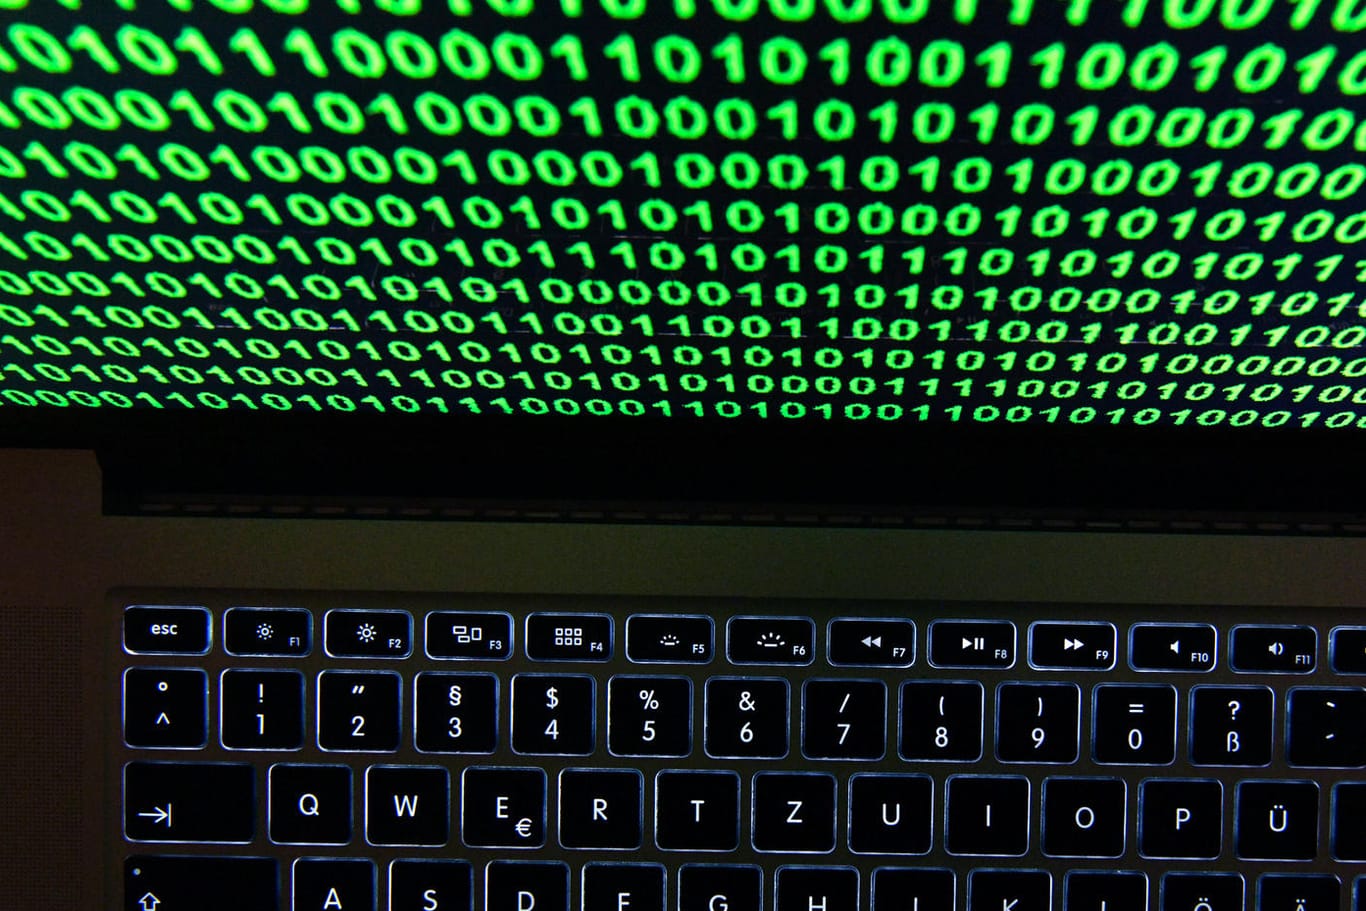 Grüner Binärcode auf einem Laptop-Display: Hacker haben nach einem Angriff geheime Dokumente veröffentlicht